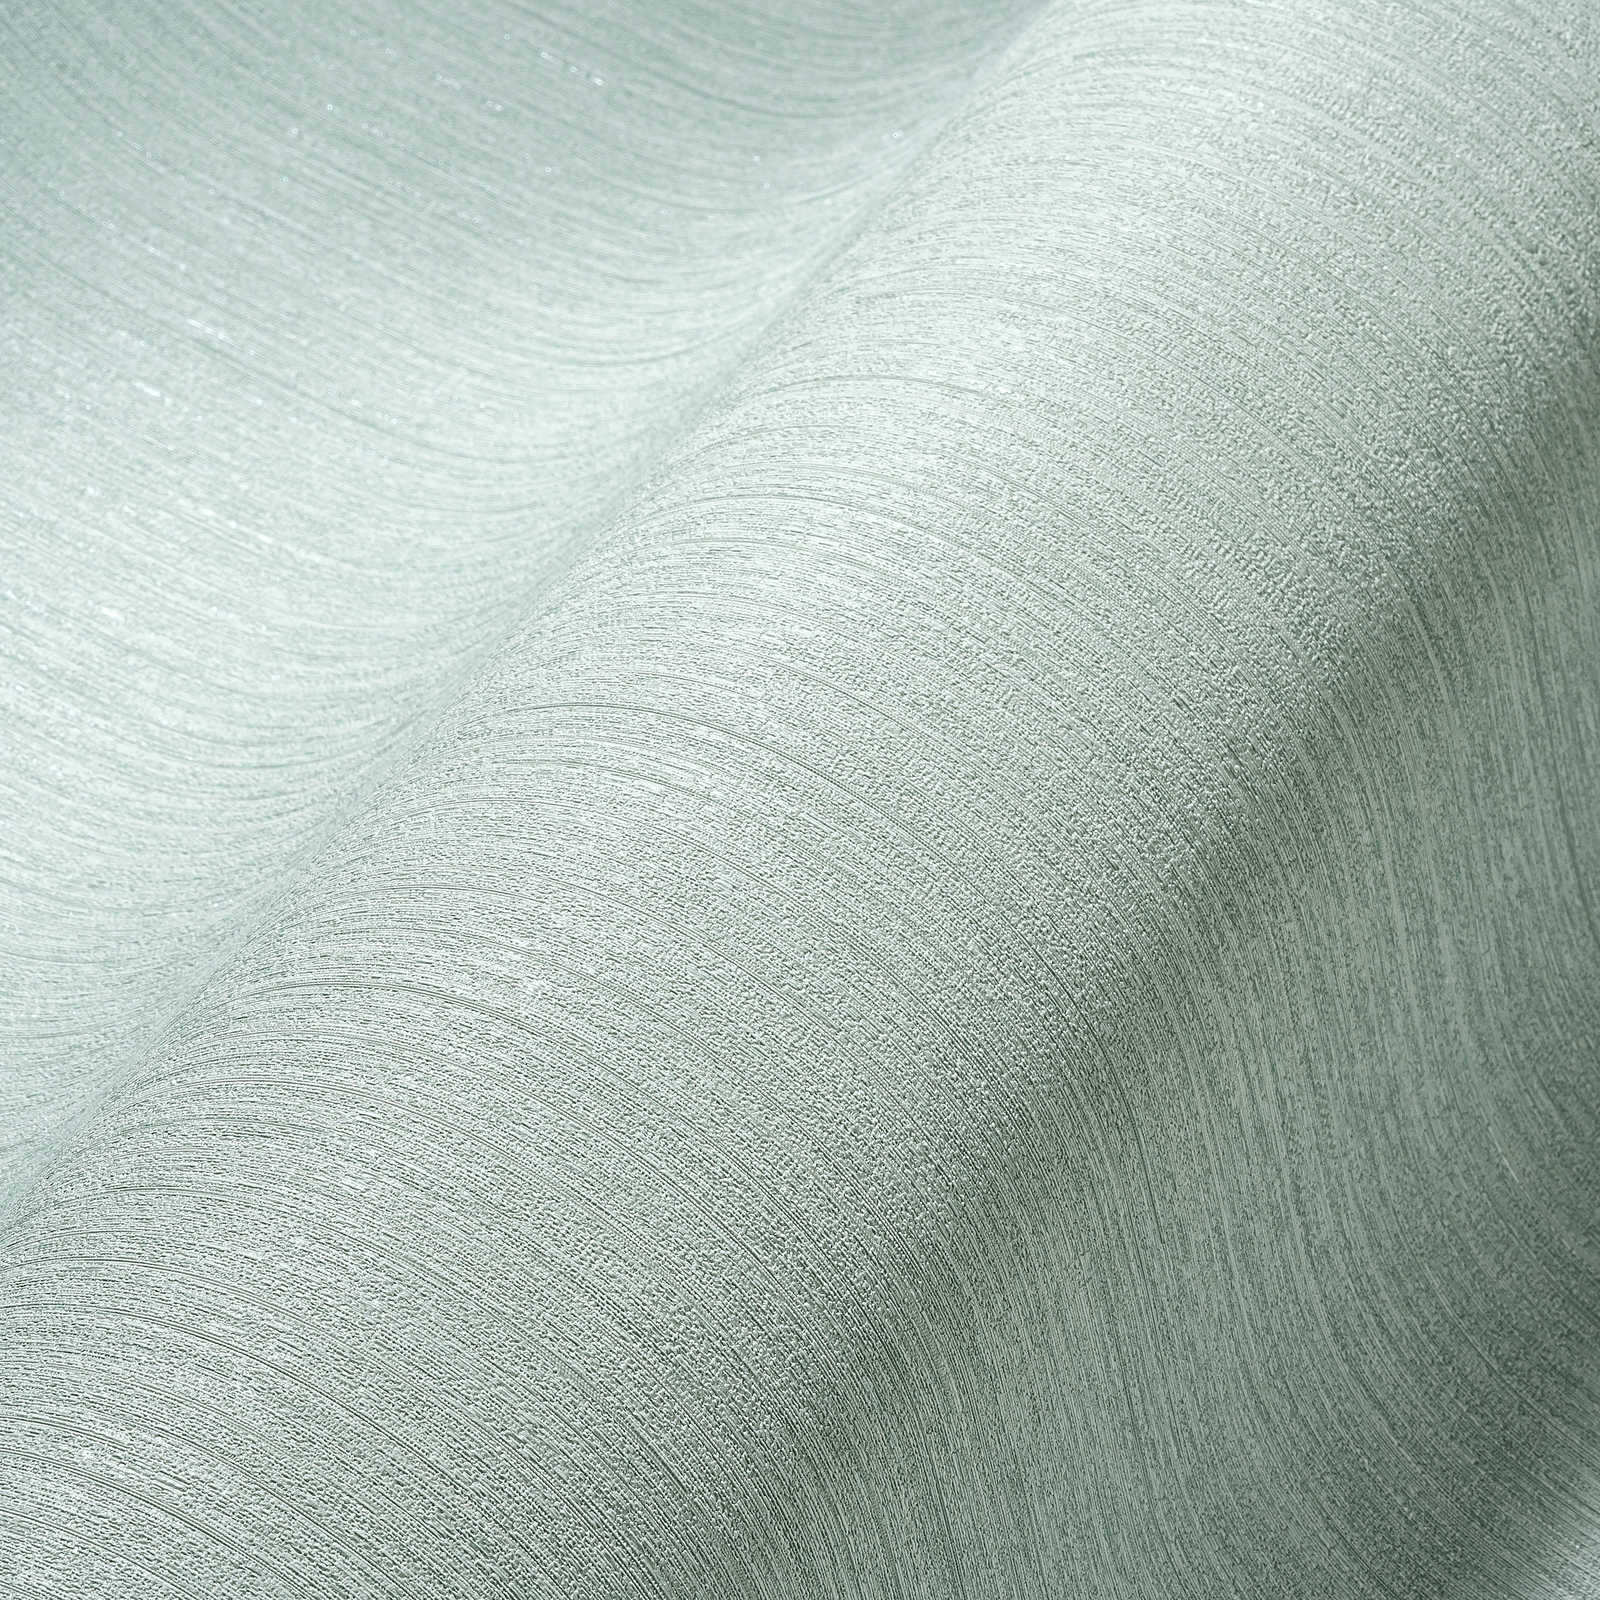             behang mintgroen effen, zijdemat met structuurpatroon
        